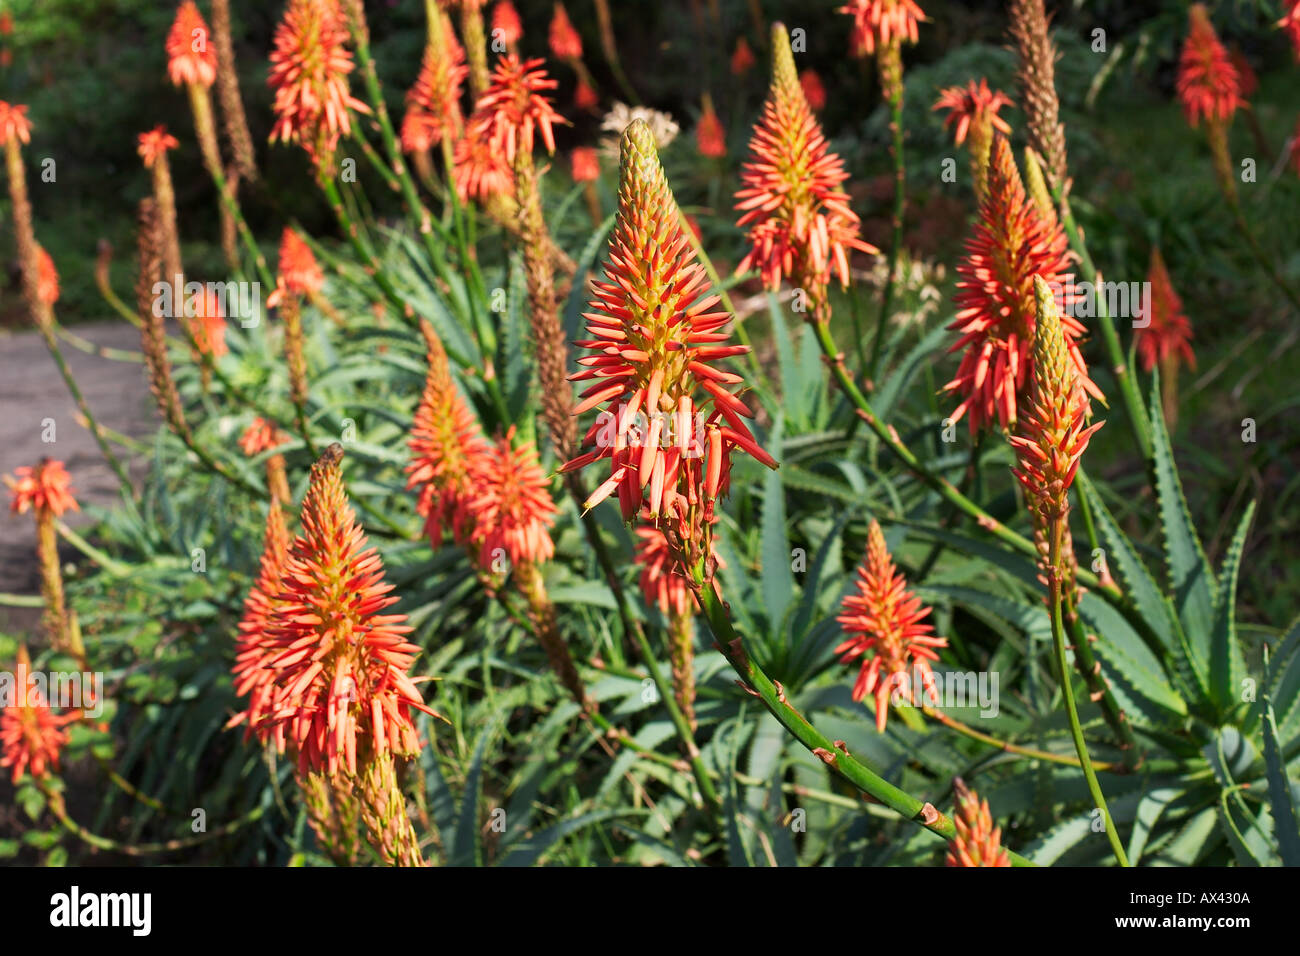 Aloe barbadensis in bloom Aloe vera Stock Photo - Alamy